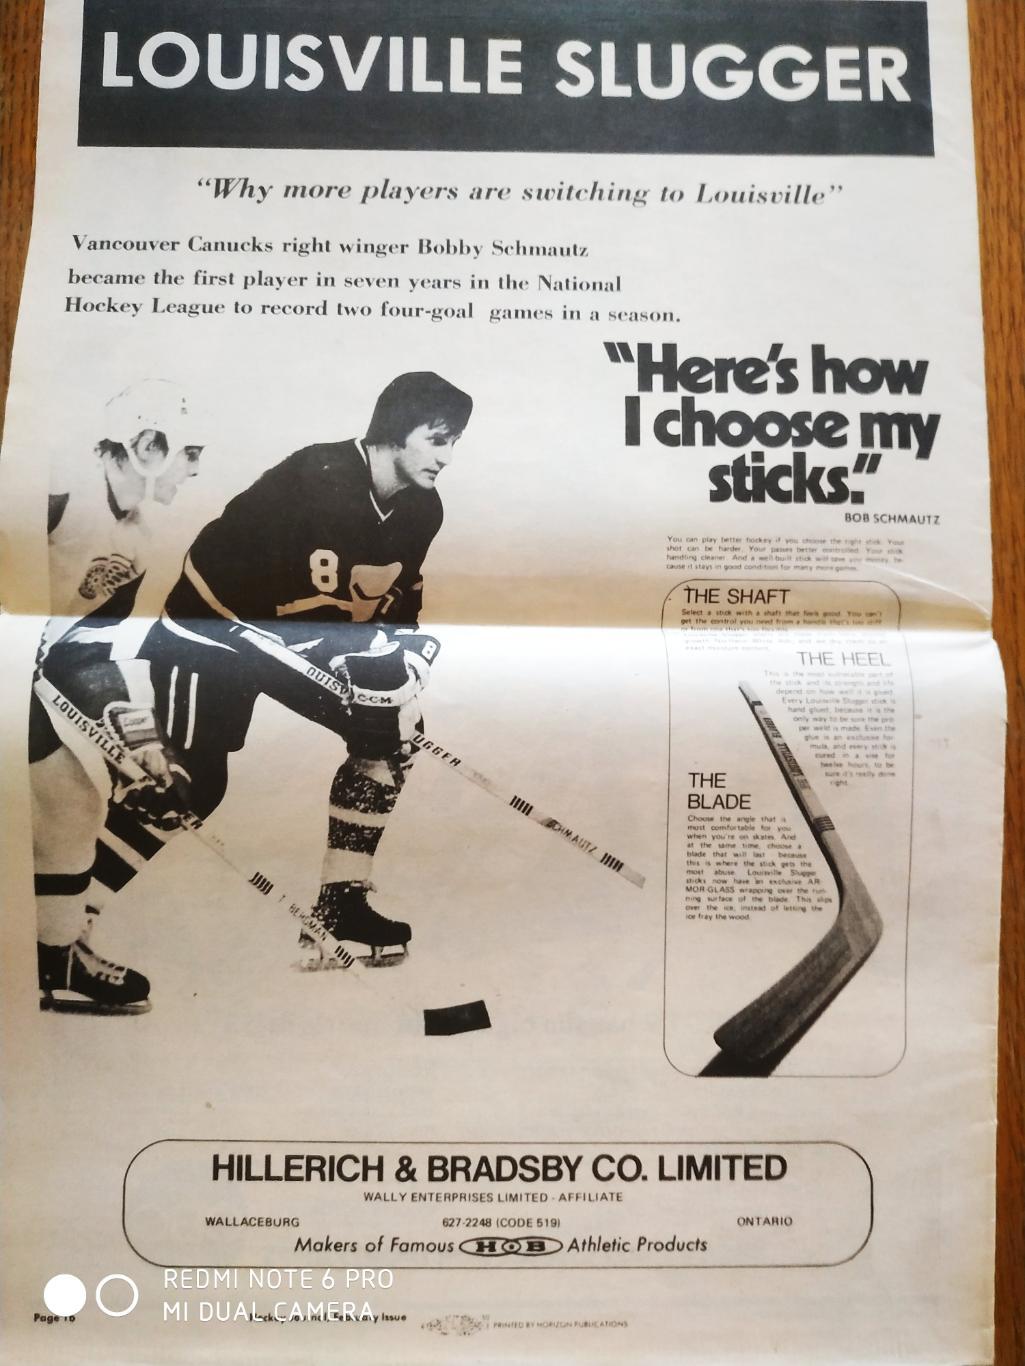 ХОККЕЙ ГАЗЕТА НХЛ NHL 1972 HOCKEY JOURNAL VOL.2 №5 3